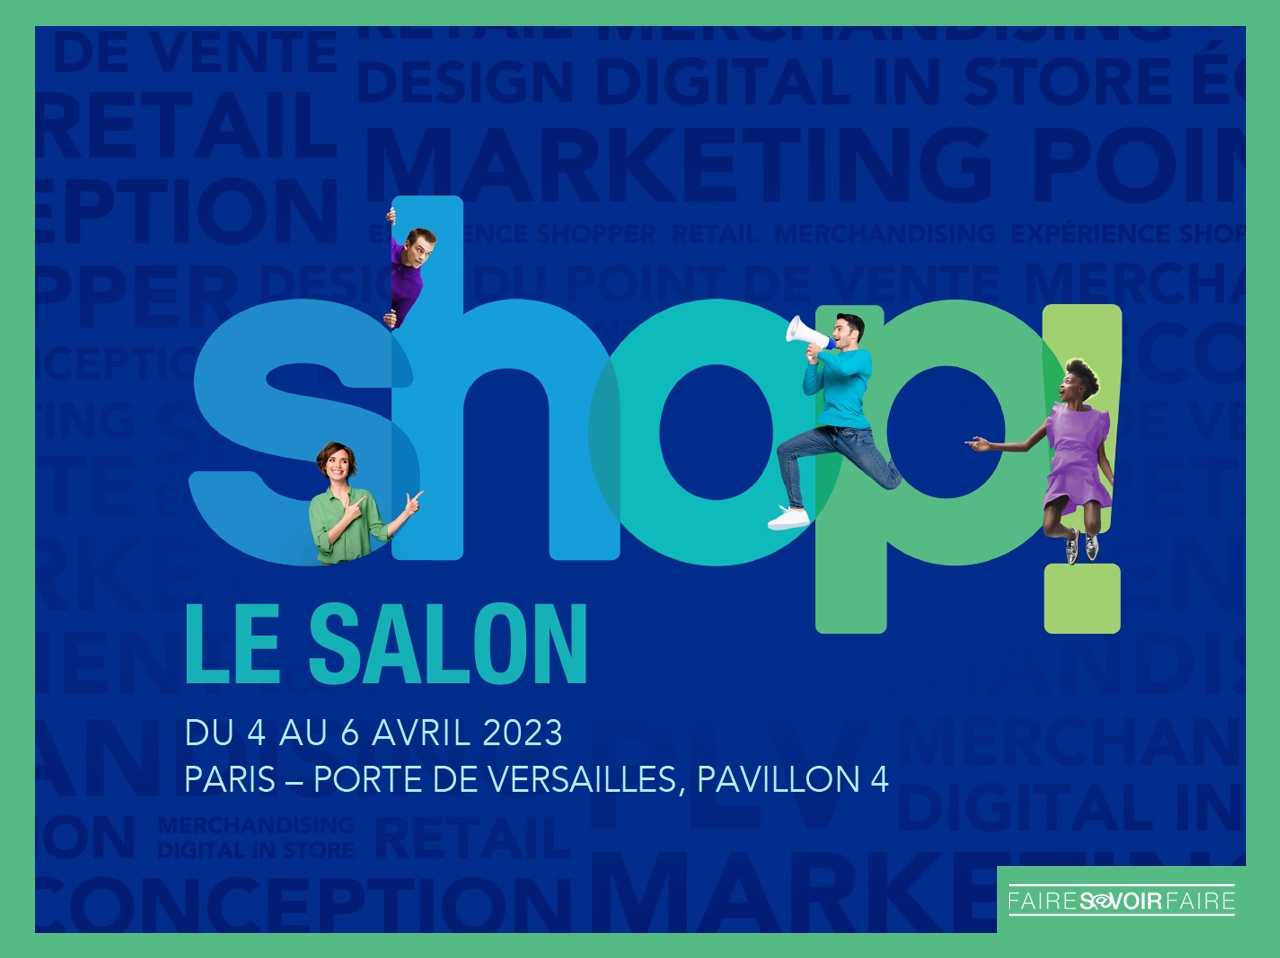 Le « Salon MPV » se transforme et devient « Shop! Le Salon », du 4 au 6 avril à Paris